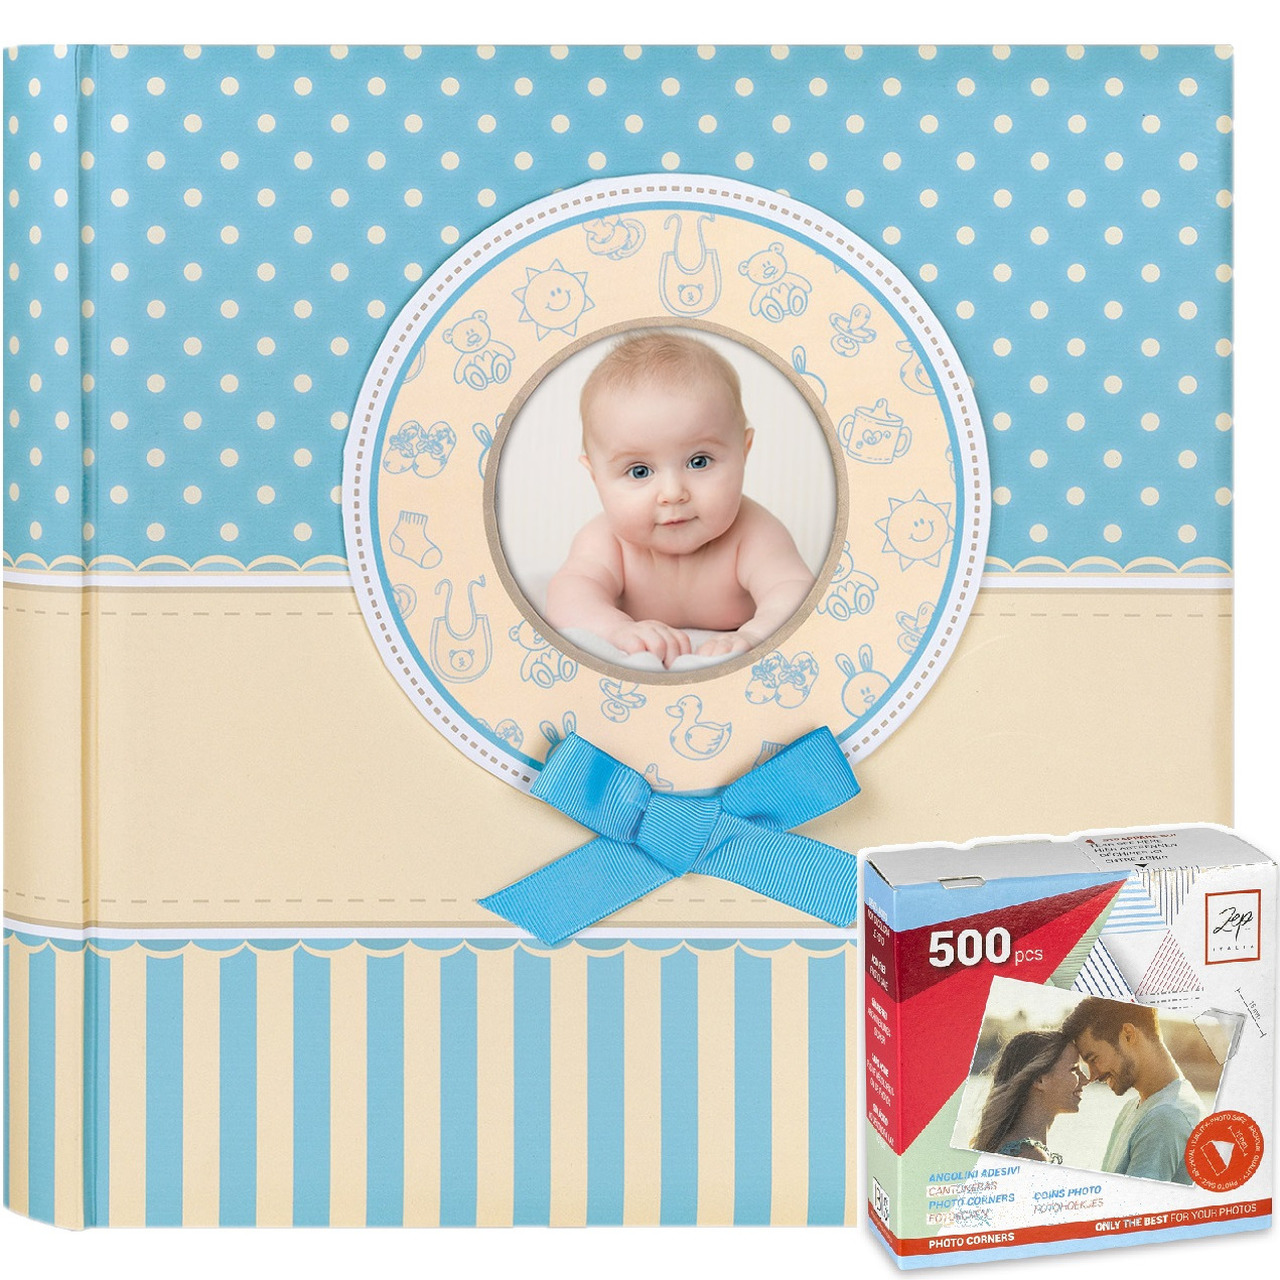 Fotoboek-fotoalbum Matilda baby jongetje met 30 paginas blauw 31 x 31 x 3,5 cm inclusief plakkers